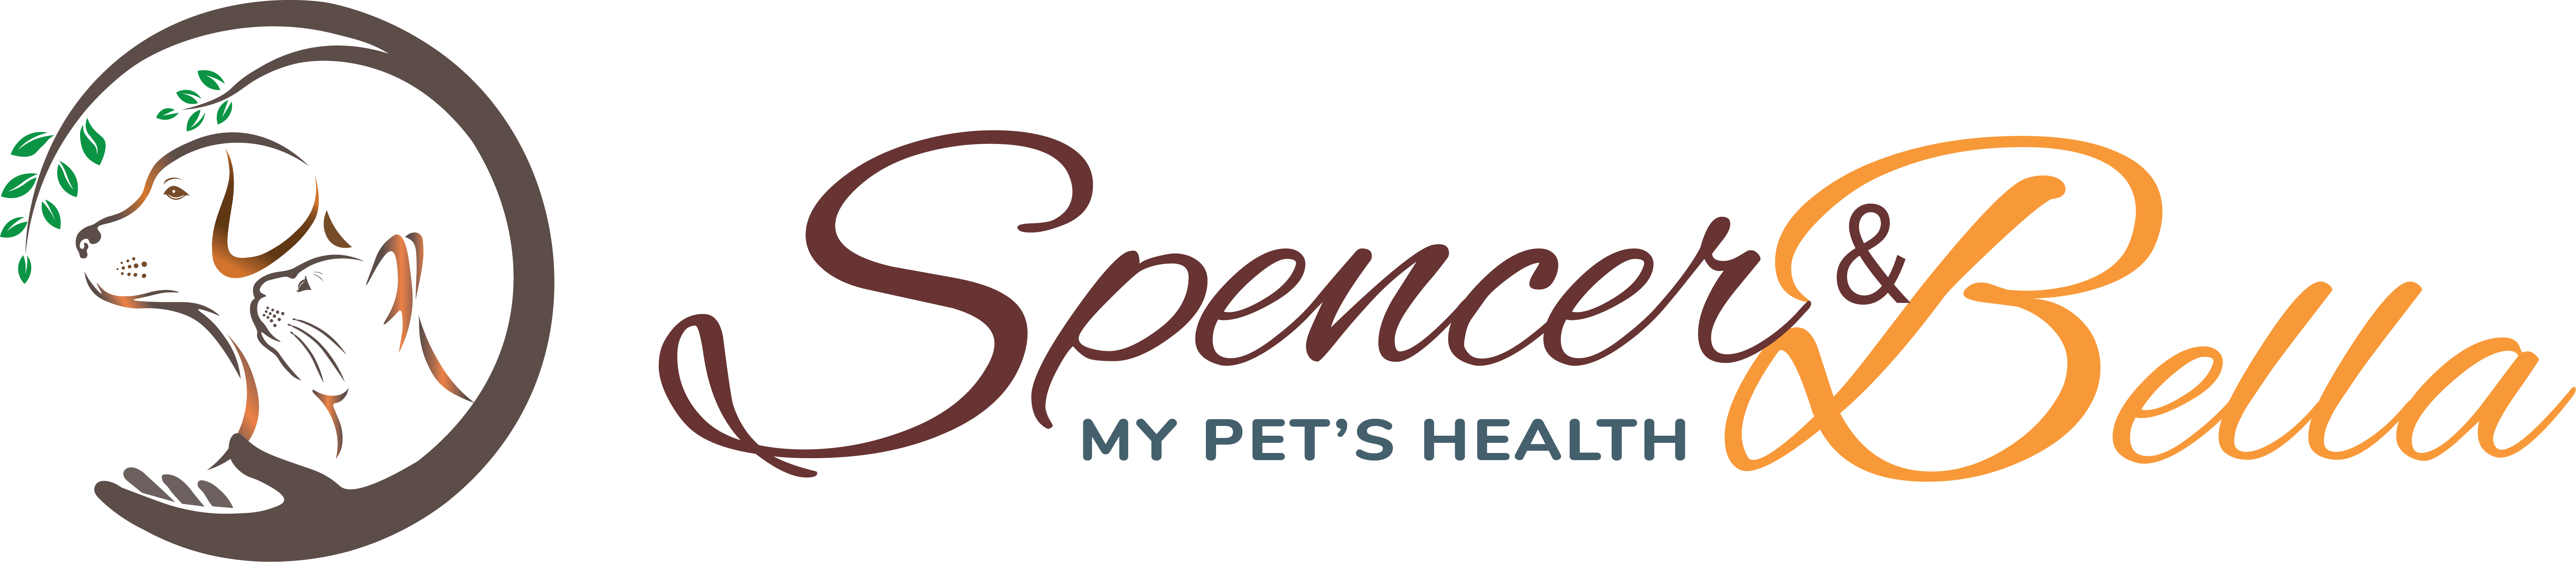 Spencer & Bella - My Pet's Health